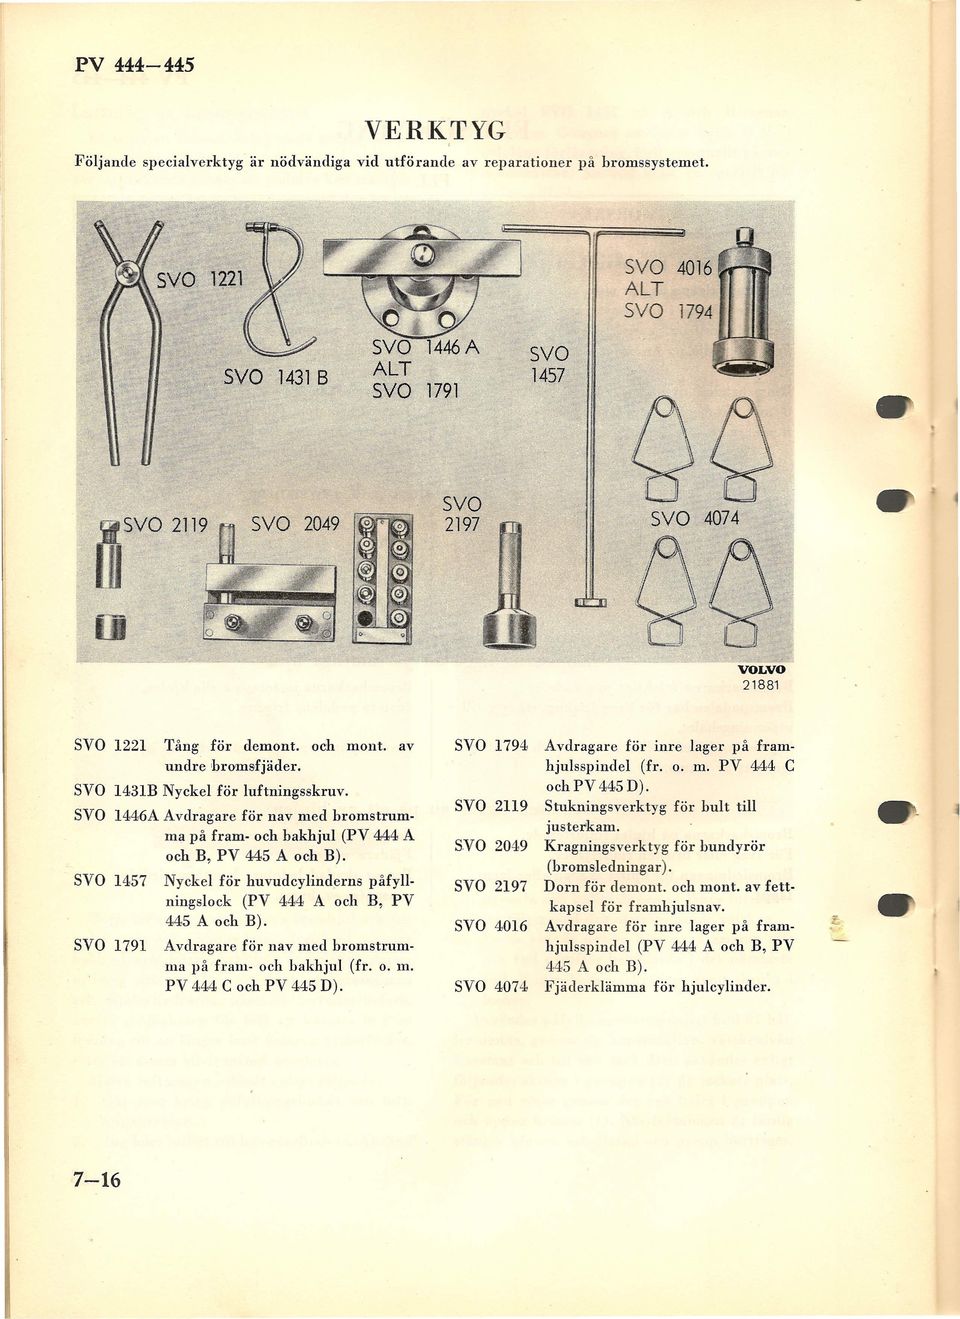 SVO 1457 Nyckel för huvudcylinderns påfyllningslock (PV 444 A och B, PV 445 A och B). SVO 1791 Avdragare för nav med bromstrumma på fram- och bakhjul (fr. o. m. PV 444 C och PV 445 D).